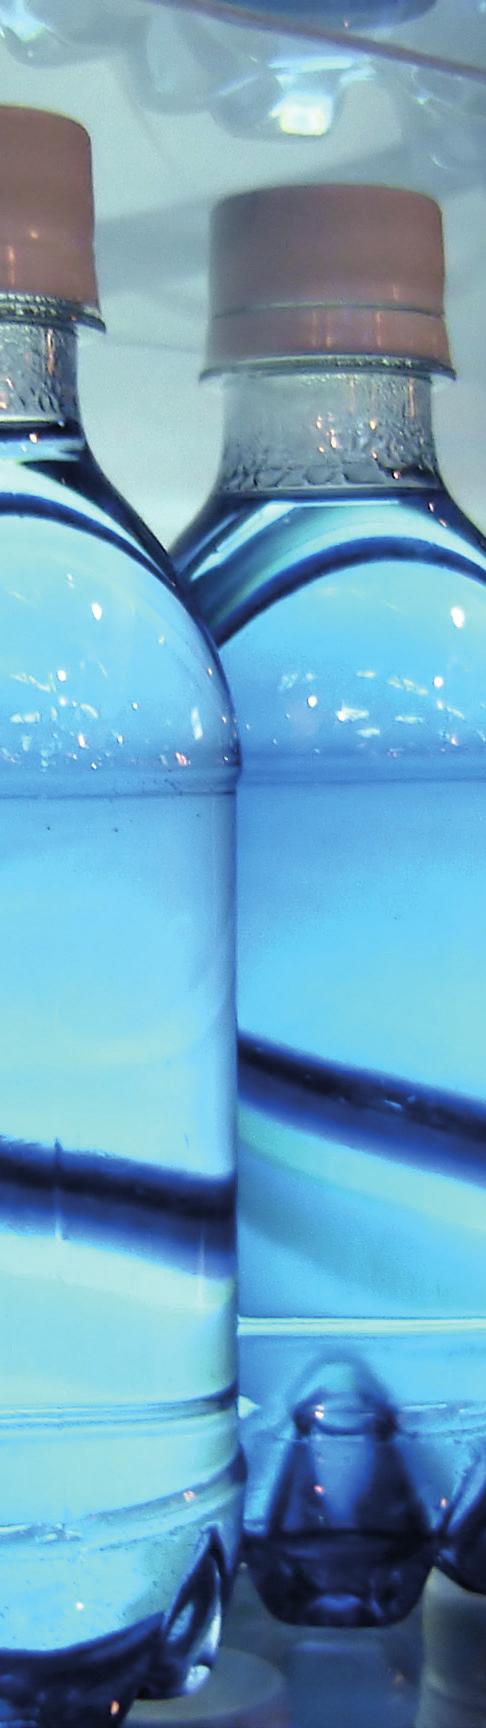 Balená voda Life Sciences dusitany 0,005 mg/l 1,1-dichlorethen 0,1 µg/l selen* 1 µg/l 1,2-dichlorethen 0,1 µg/l úprava vzorku pro stanovení kovů - fixace W-BO-BABYSPRING sterilní plast, 2x 500 ml -